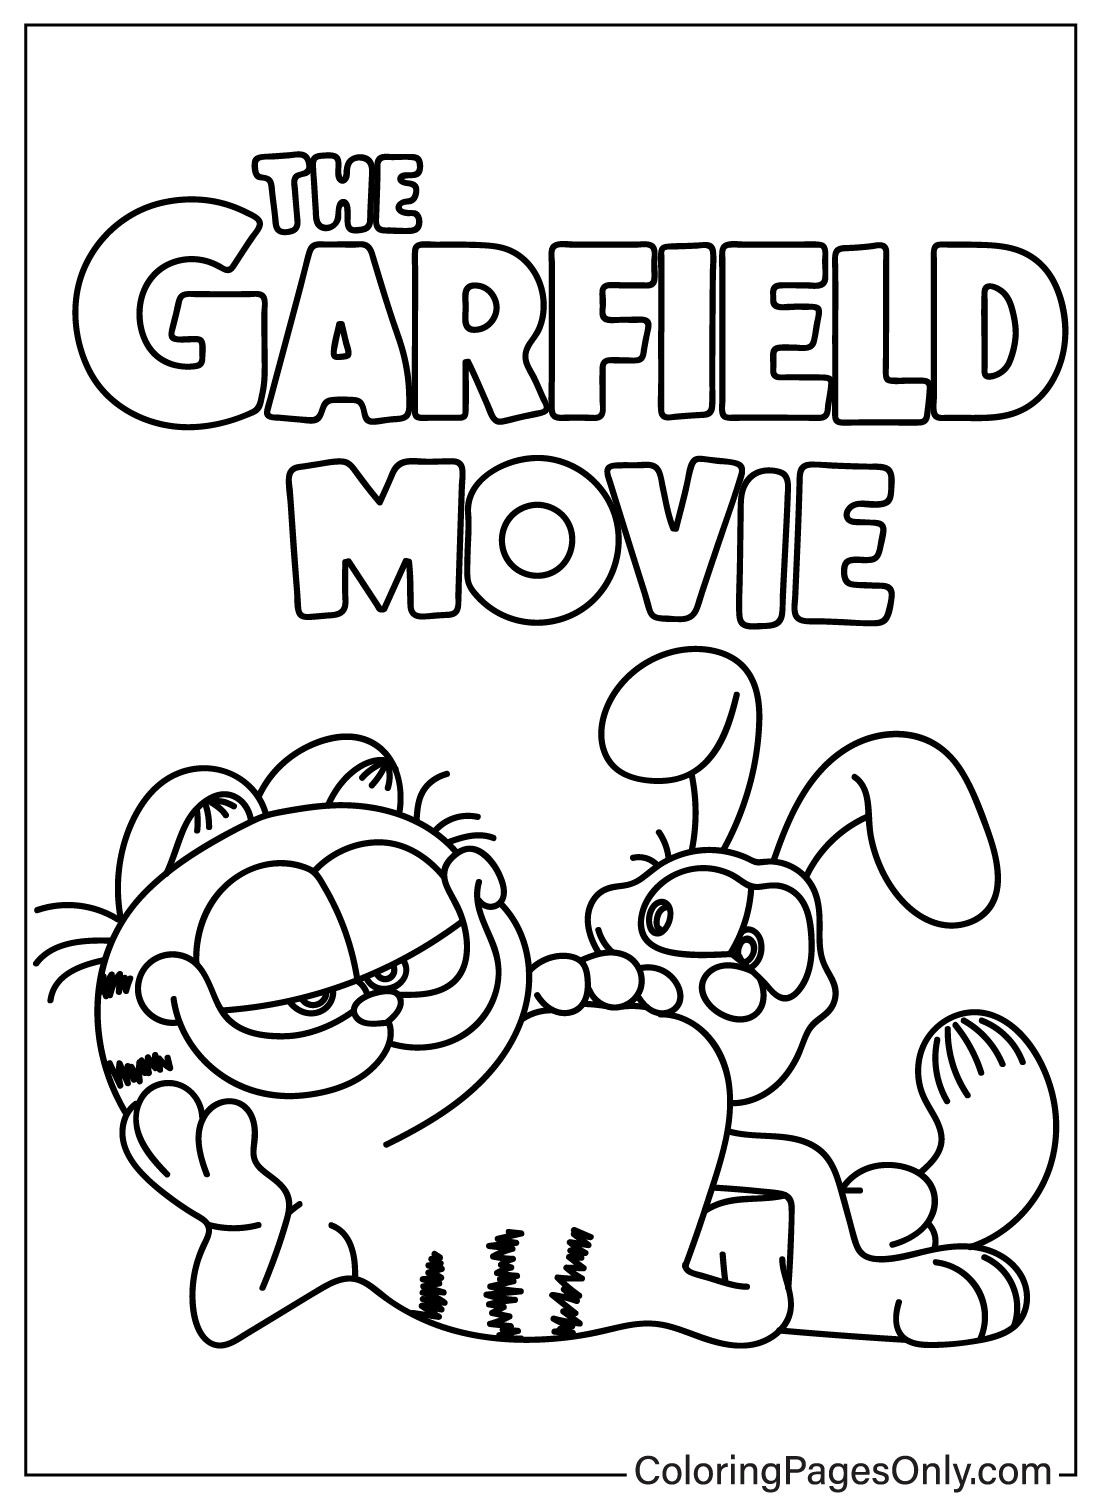 Página para colorir de Garfield e Odie de Garfield